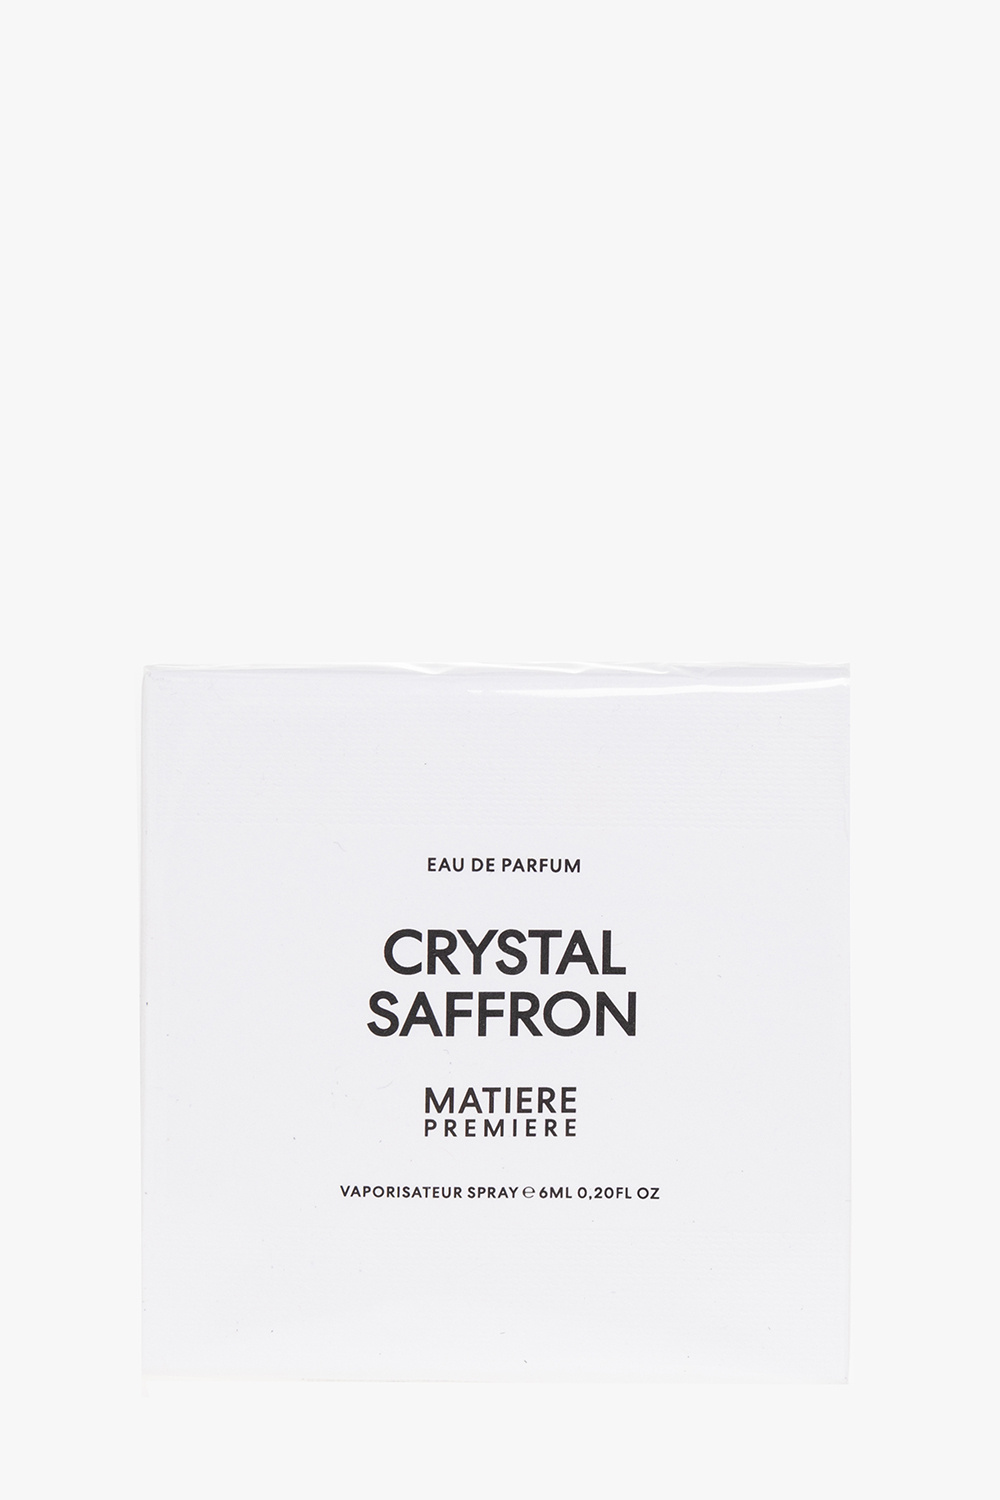 Cream ‘Crystal Saffron’ eau de parfum Matiere Premiere - Vitkac Germany